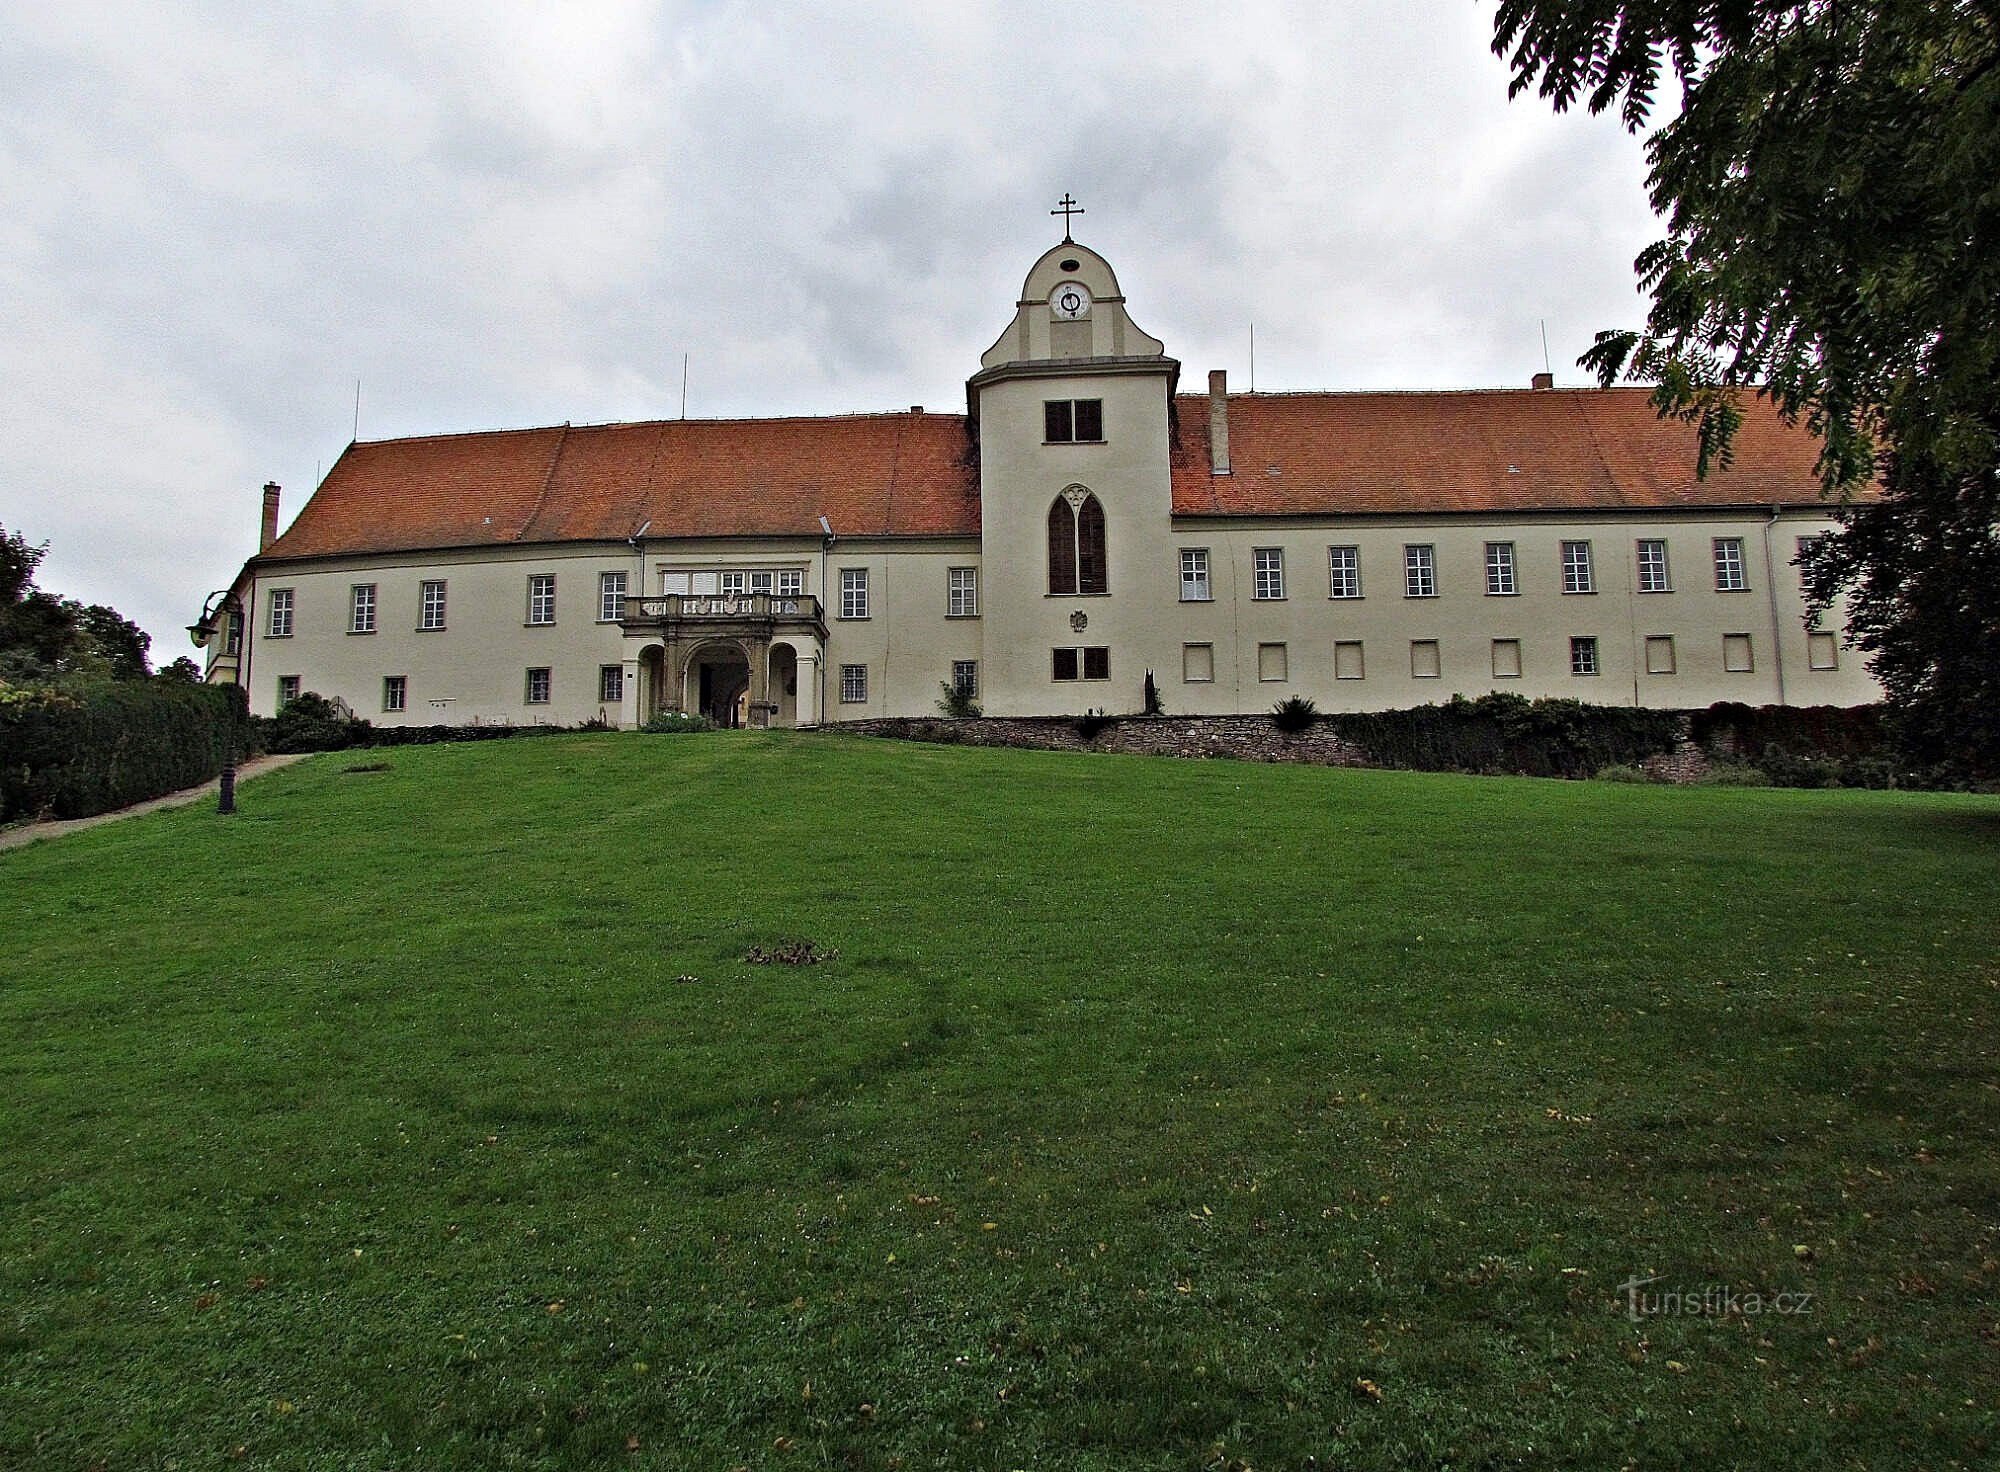 lâu đài ở Lomnica và công viên